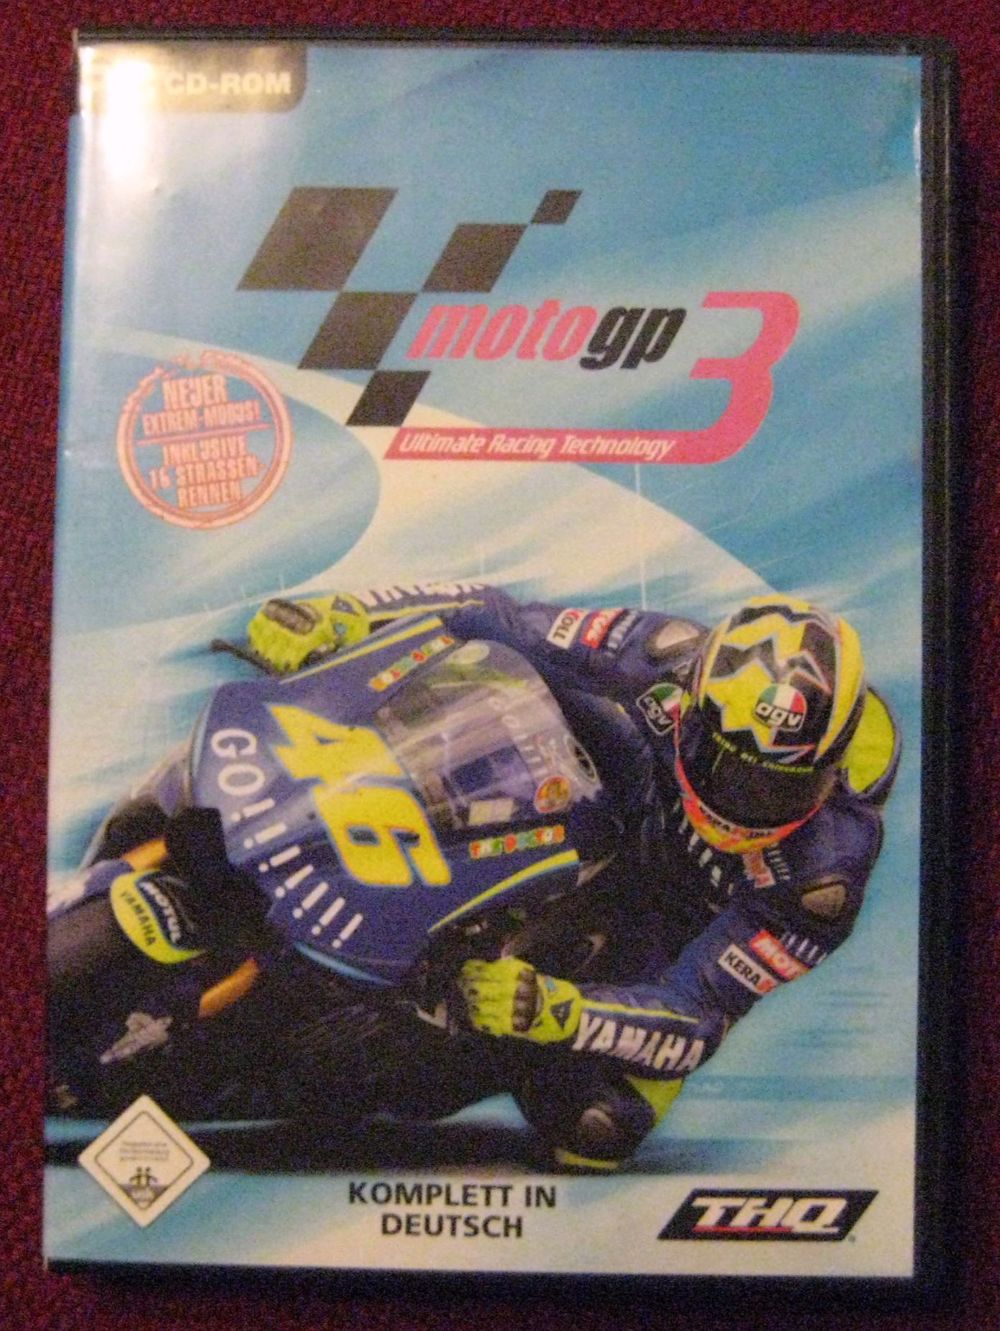 MotoGP 3 Ultimate Racing Technology, tolles PC-Spiel für Liebhaber von Rennspielen von THQ, OVP